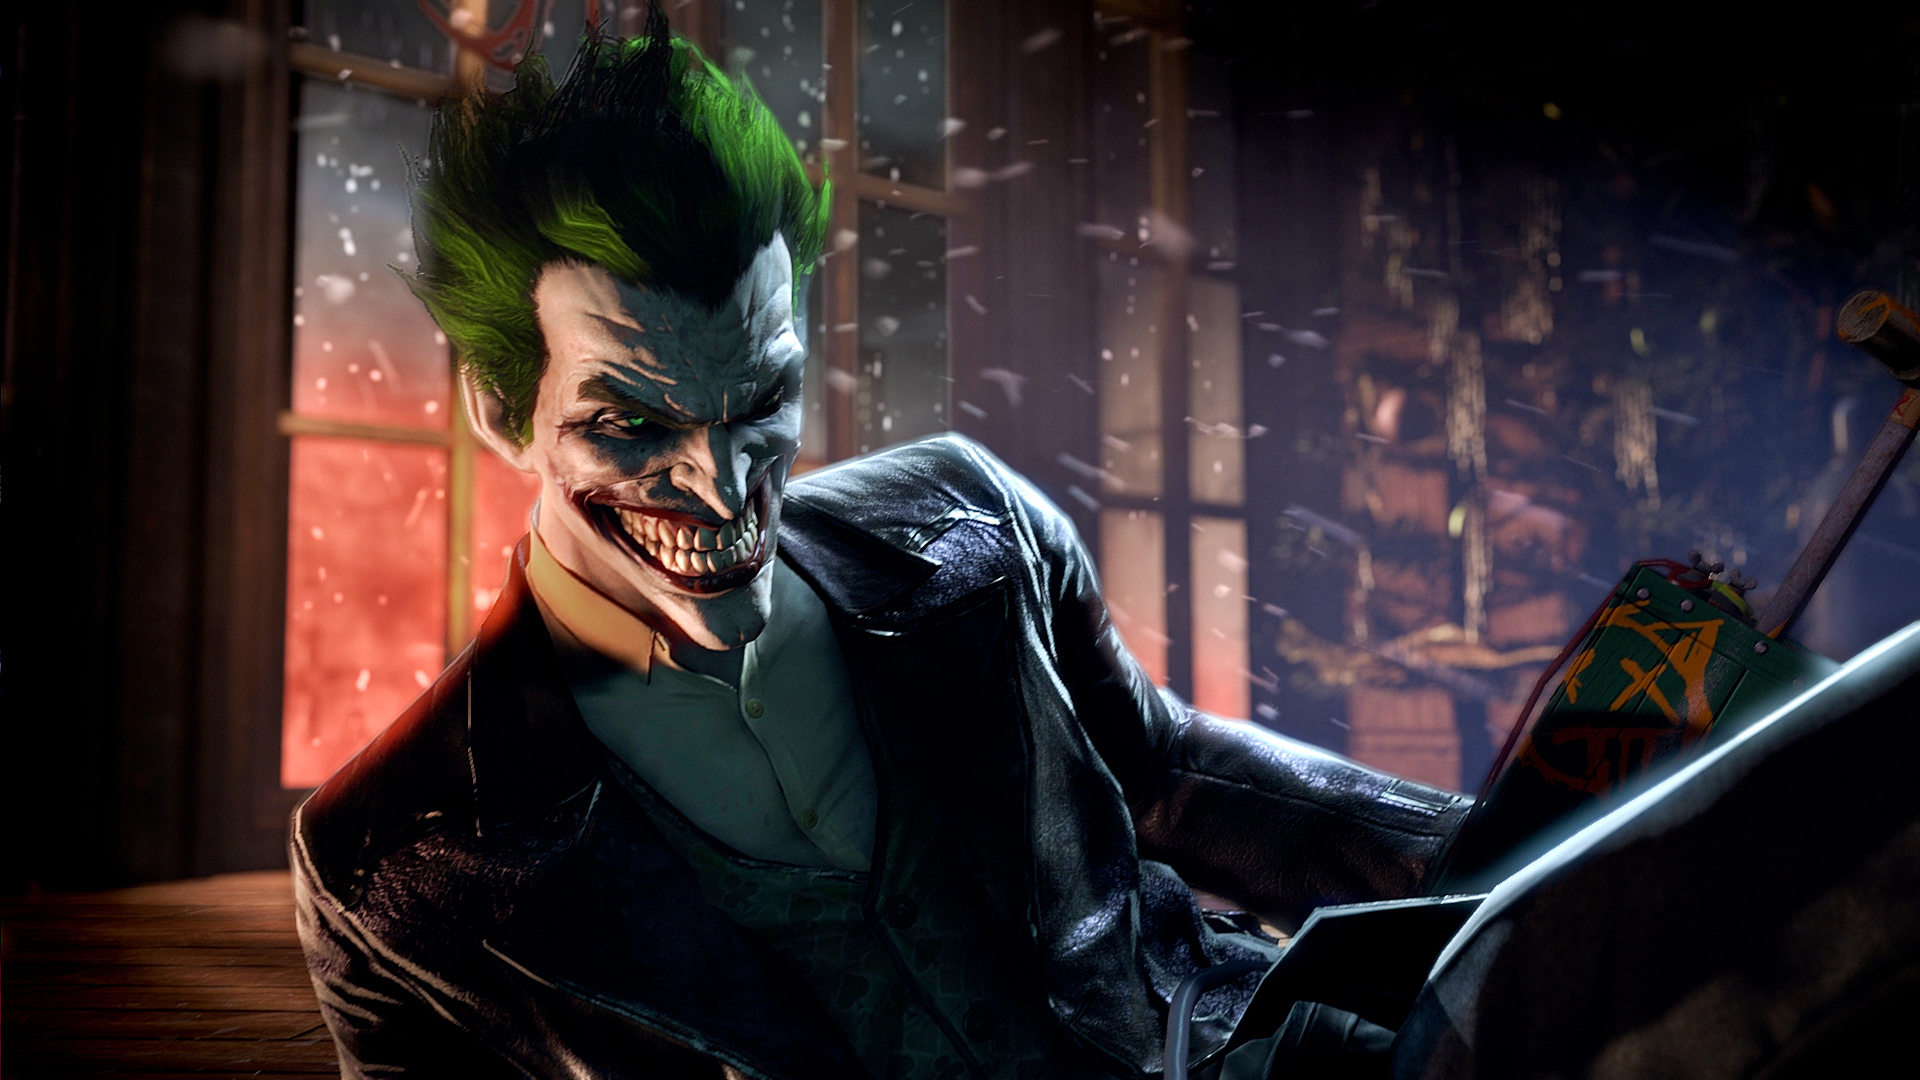 Joker Batman Arkham Origins , HD Wallpaper & Backgrounds